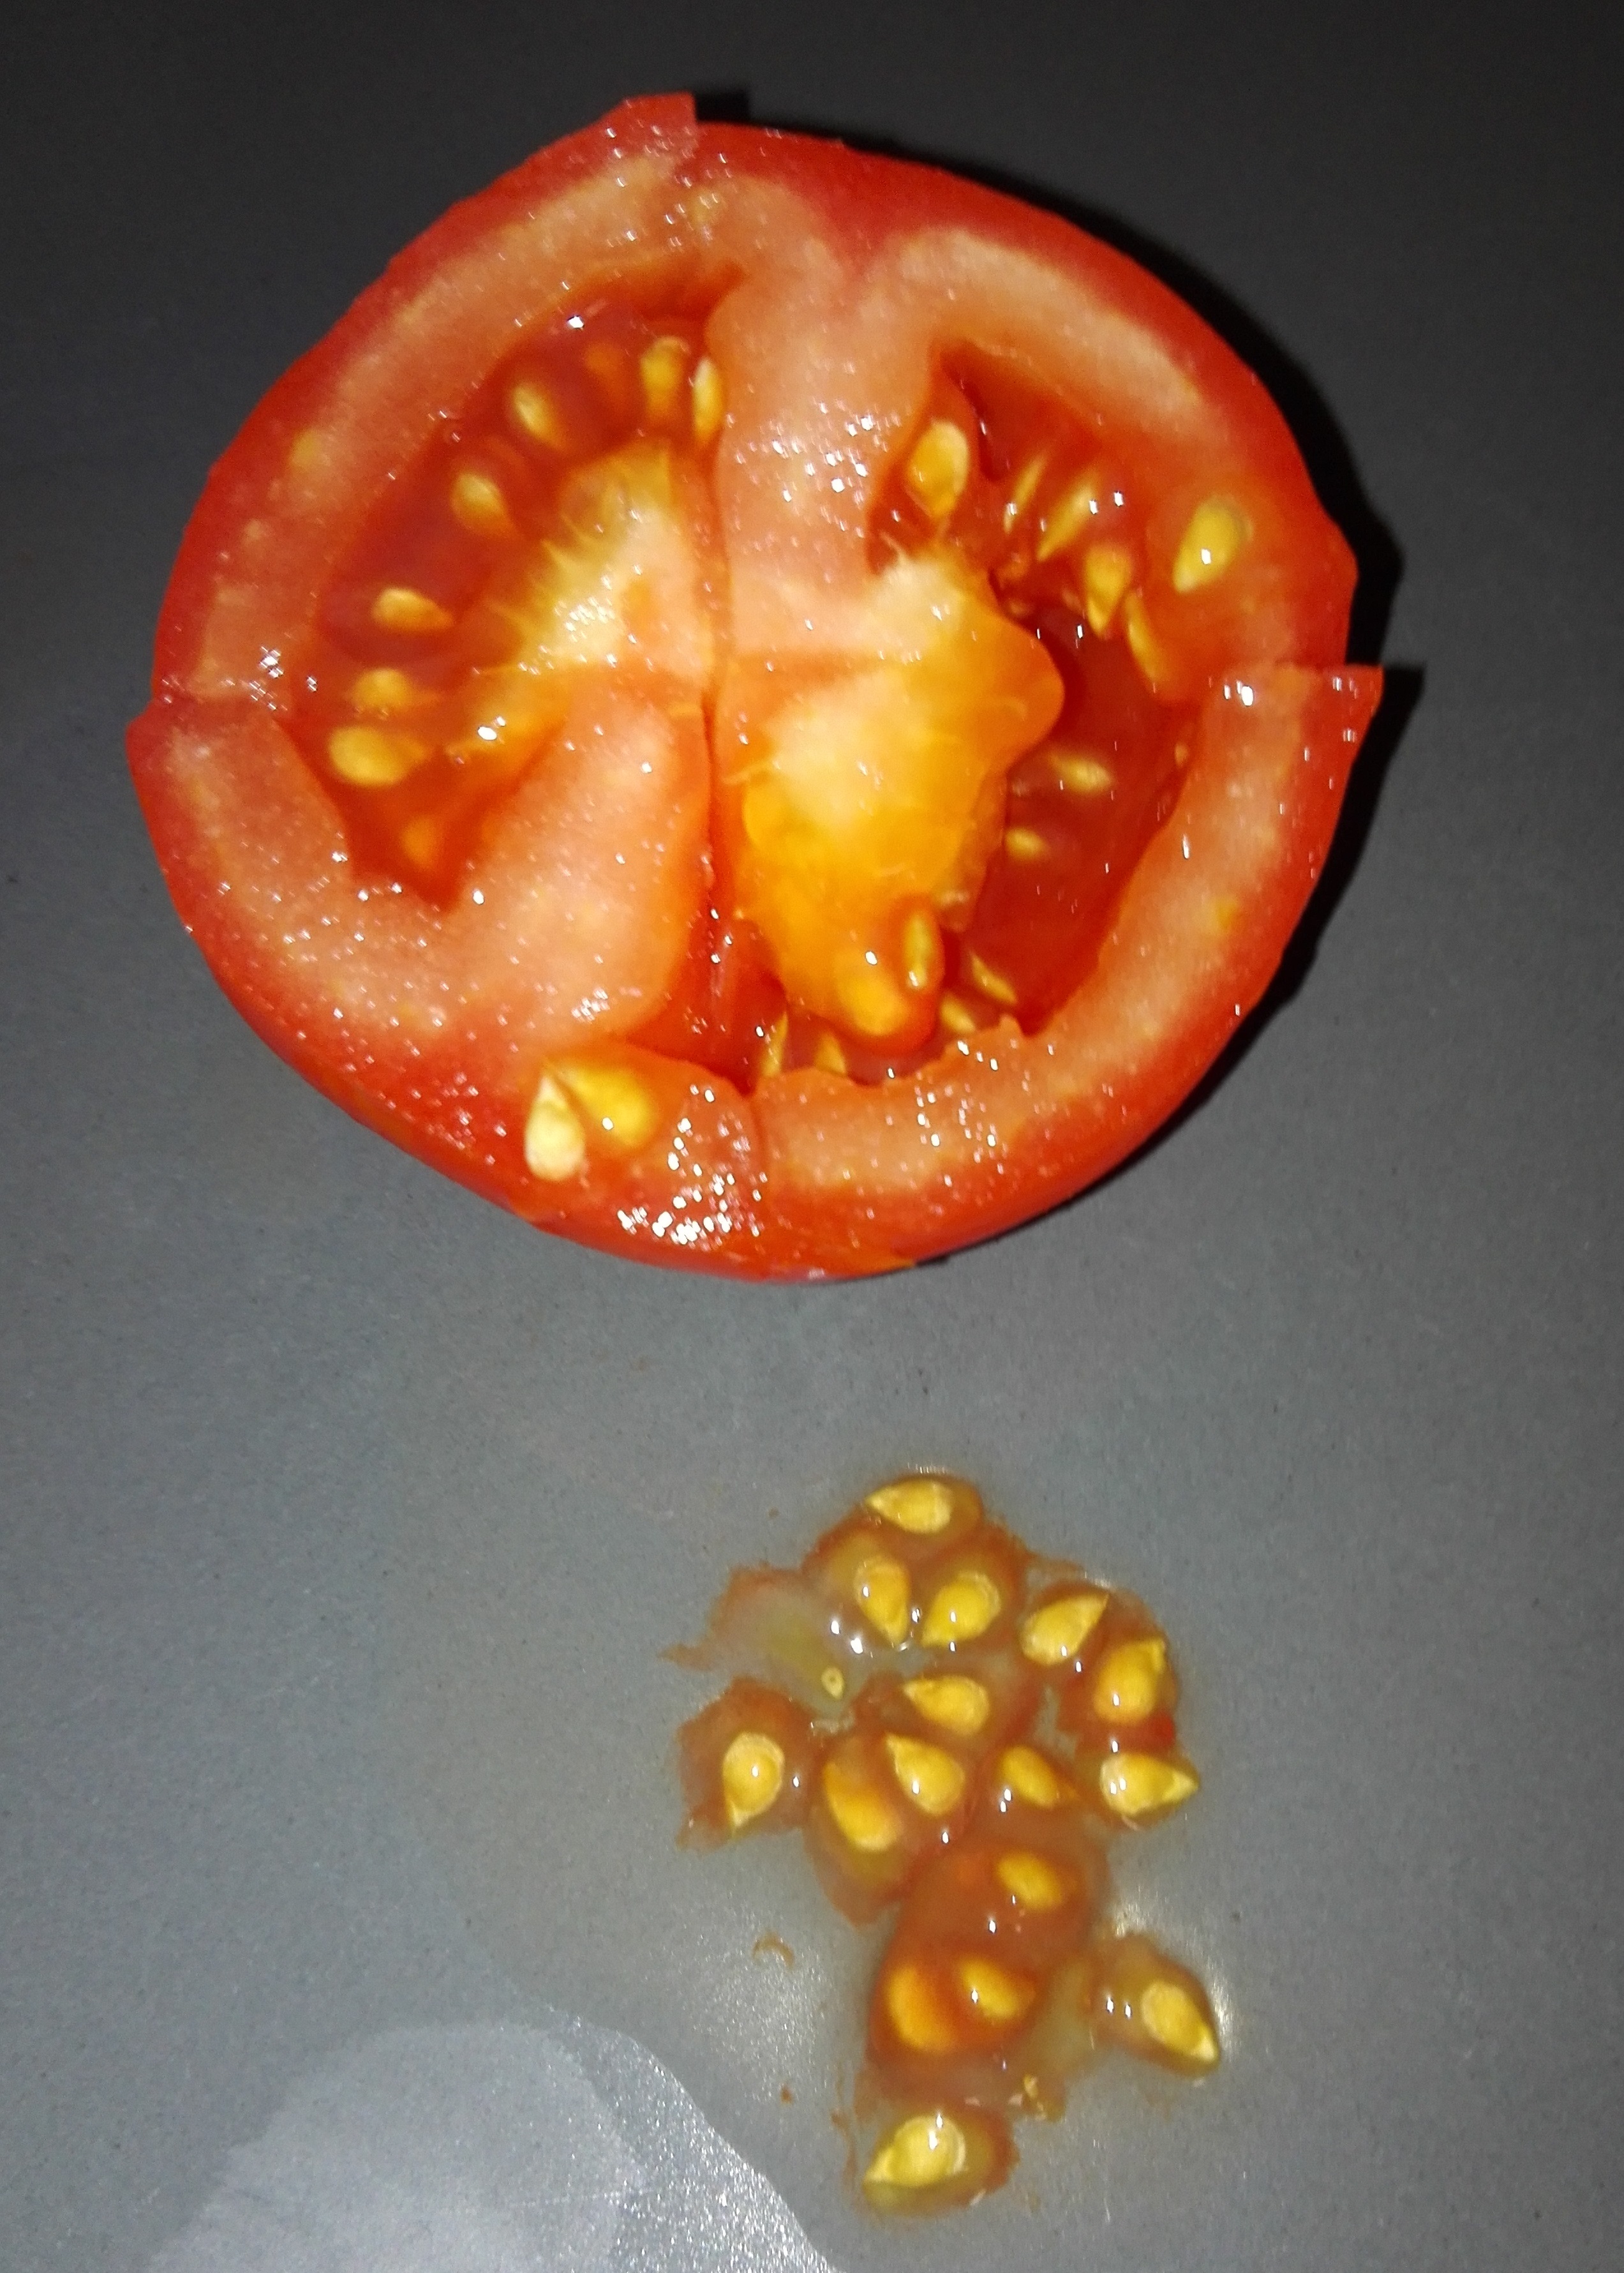 1-Sementes retiradas do tomate